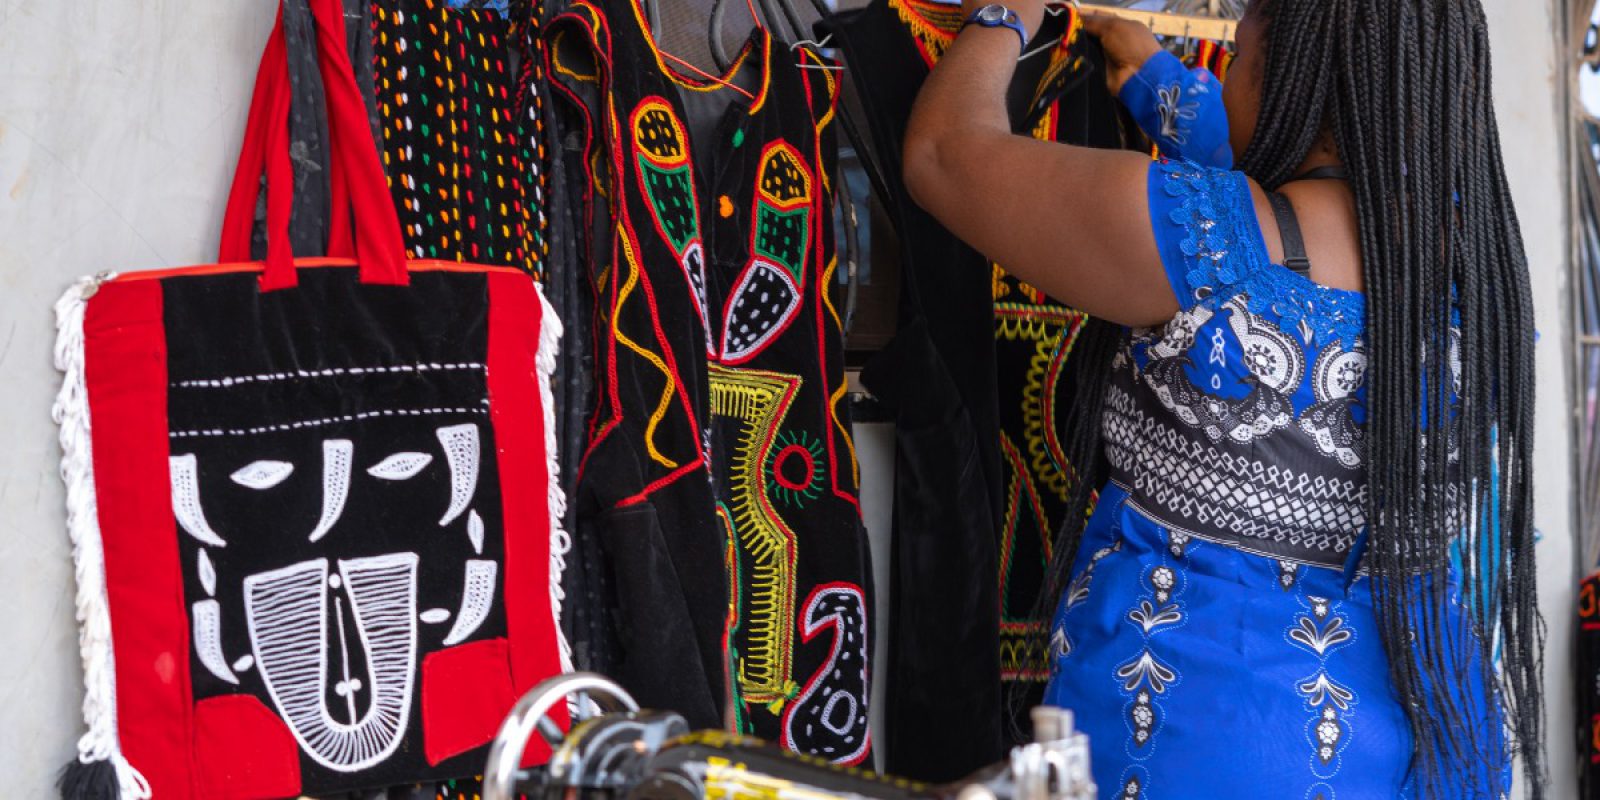 Daniella, une jeune fille déplacée qui a participé au Camp GLOW, travaille dans son atelier de couture traditionnel au Cameroun. Le JRS a créé un espace sûr pour les femmes déplacées à l'intérieur du Cameroun afin de renforcer sa réponse humanitaire dans le pays.